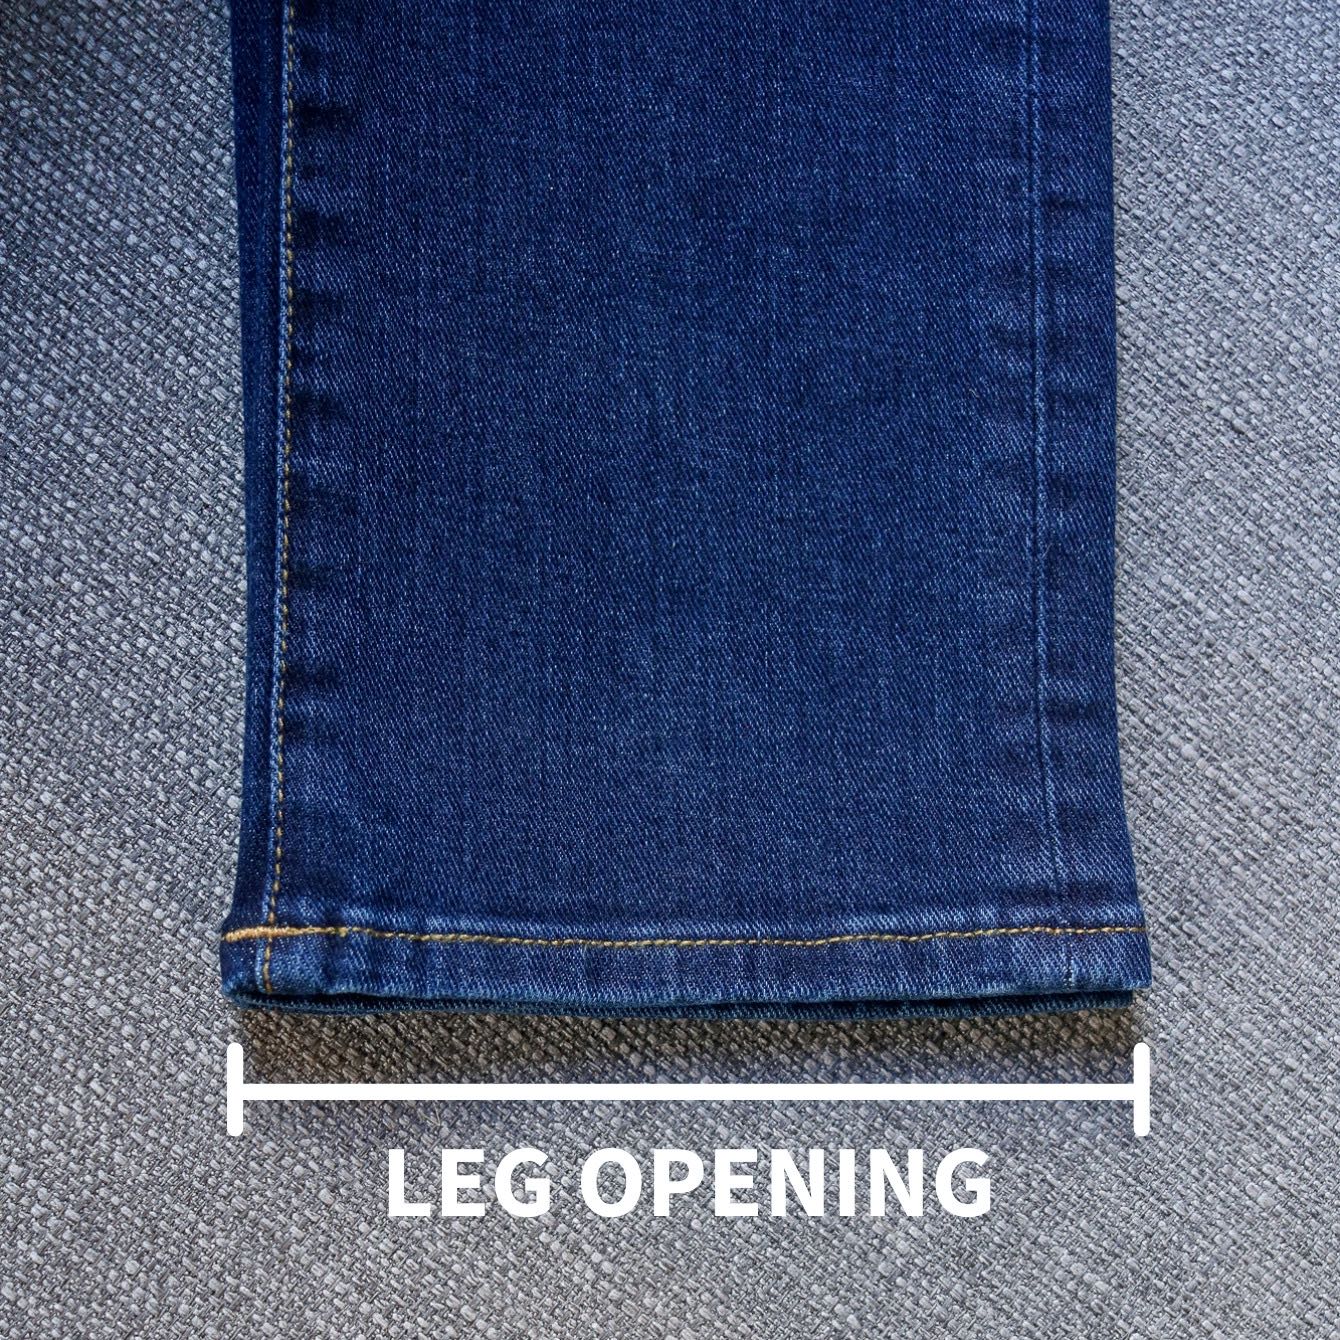 Pants leg opening